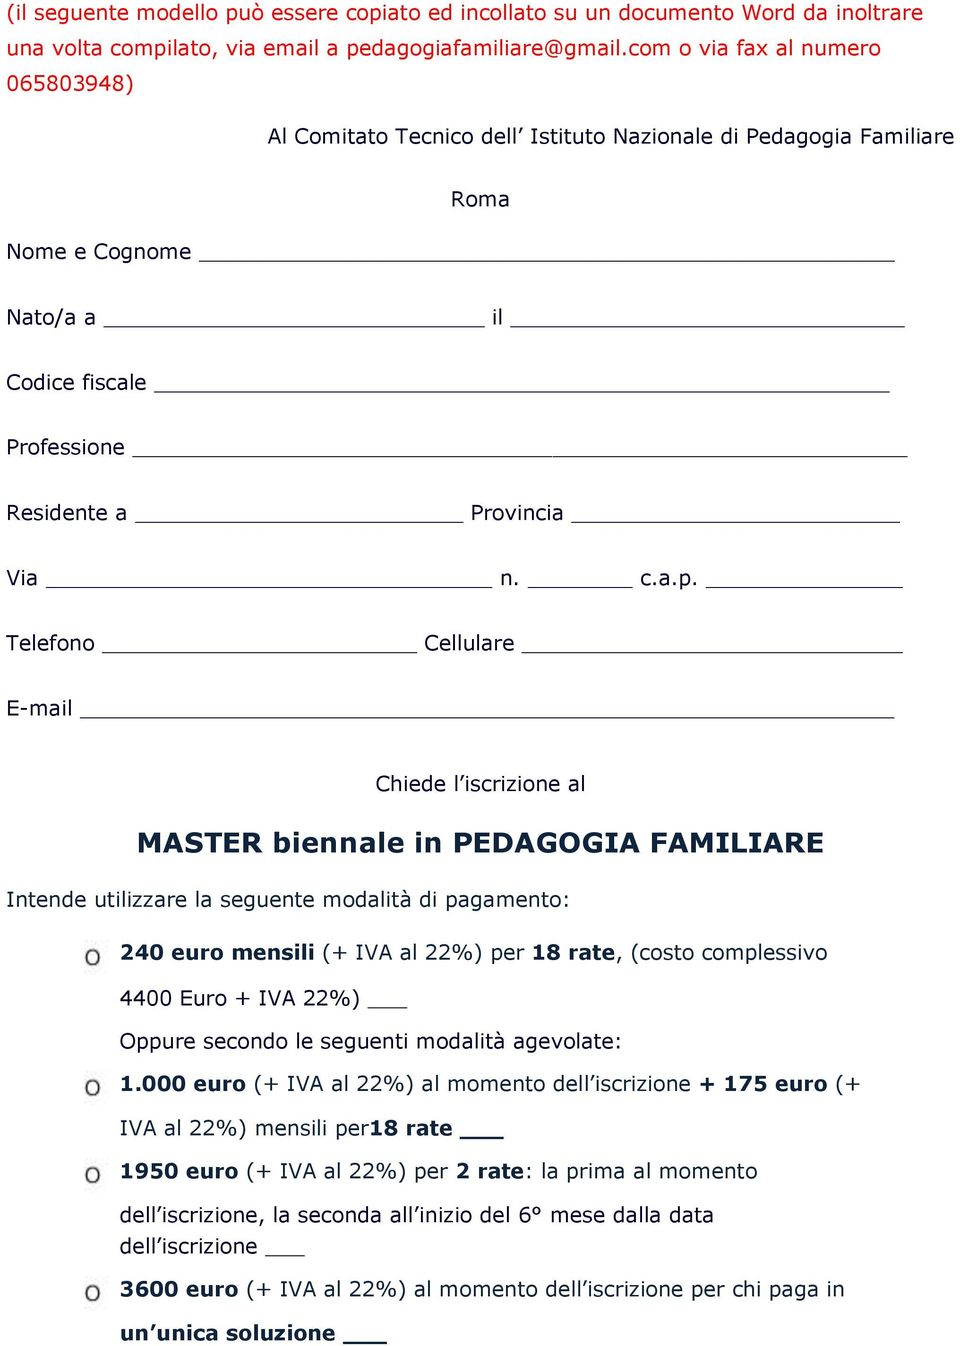 Telefn Cellulare E-mail Chiede l iscrizine al MASTER biennale in PEDAGOGIA FAMILIARE Intende utilizzare la seguente mdalità di pagament: 240 eur mensili (+ IVA al 22%) per 18 rate, (cst cmplessiv